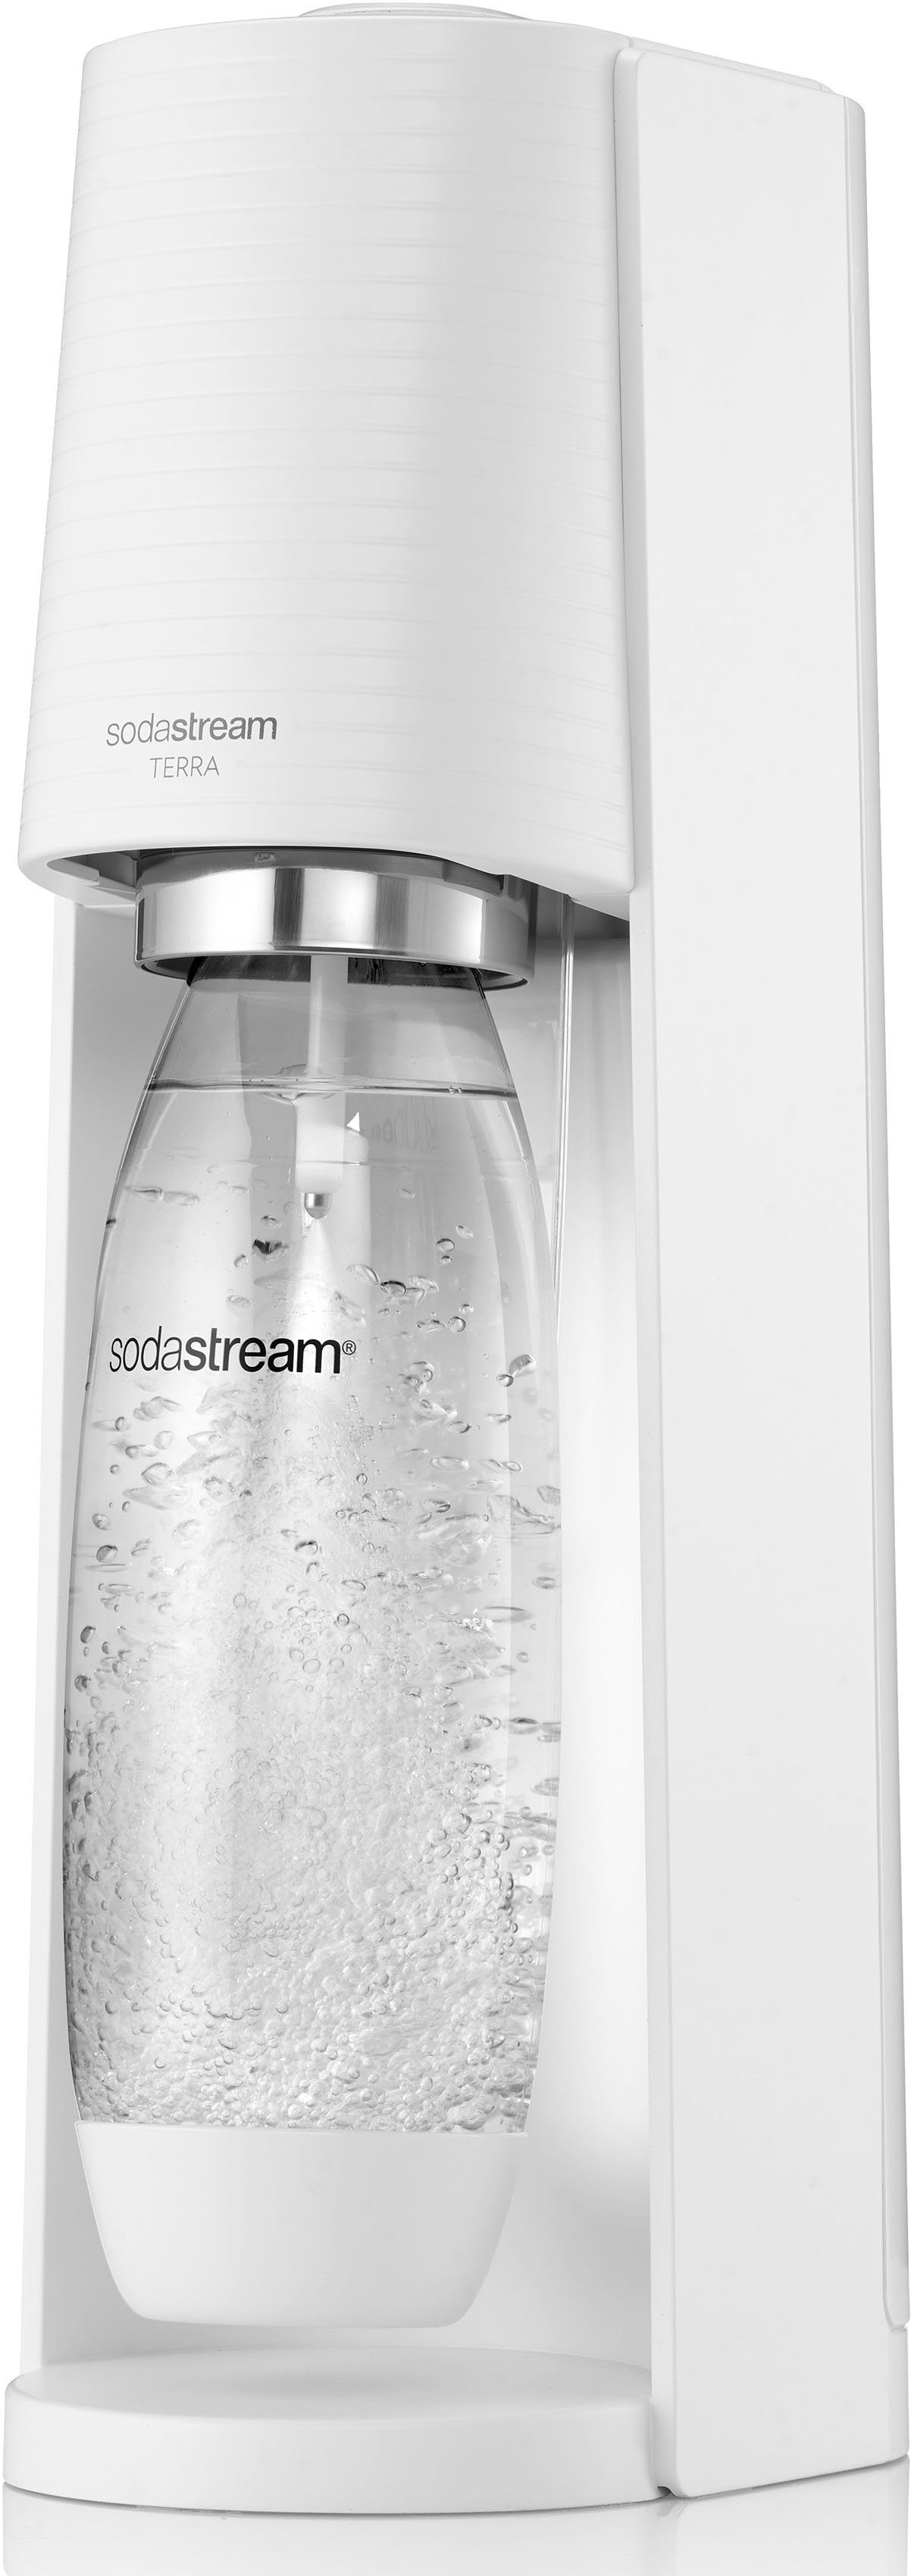 1x CQC, TERRA, spülmaschinenfeste CO2-Zylinder SodaStream 1x Kunststoff-Flasche 1L weiß inkl. Wassersprudler